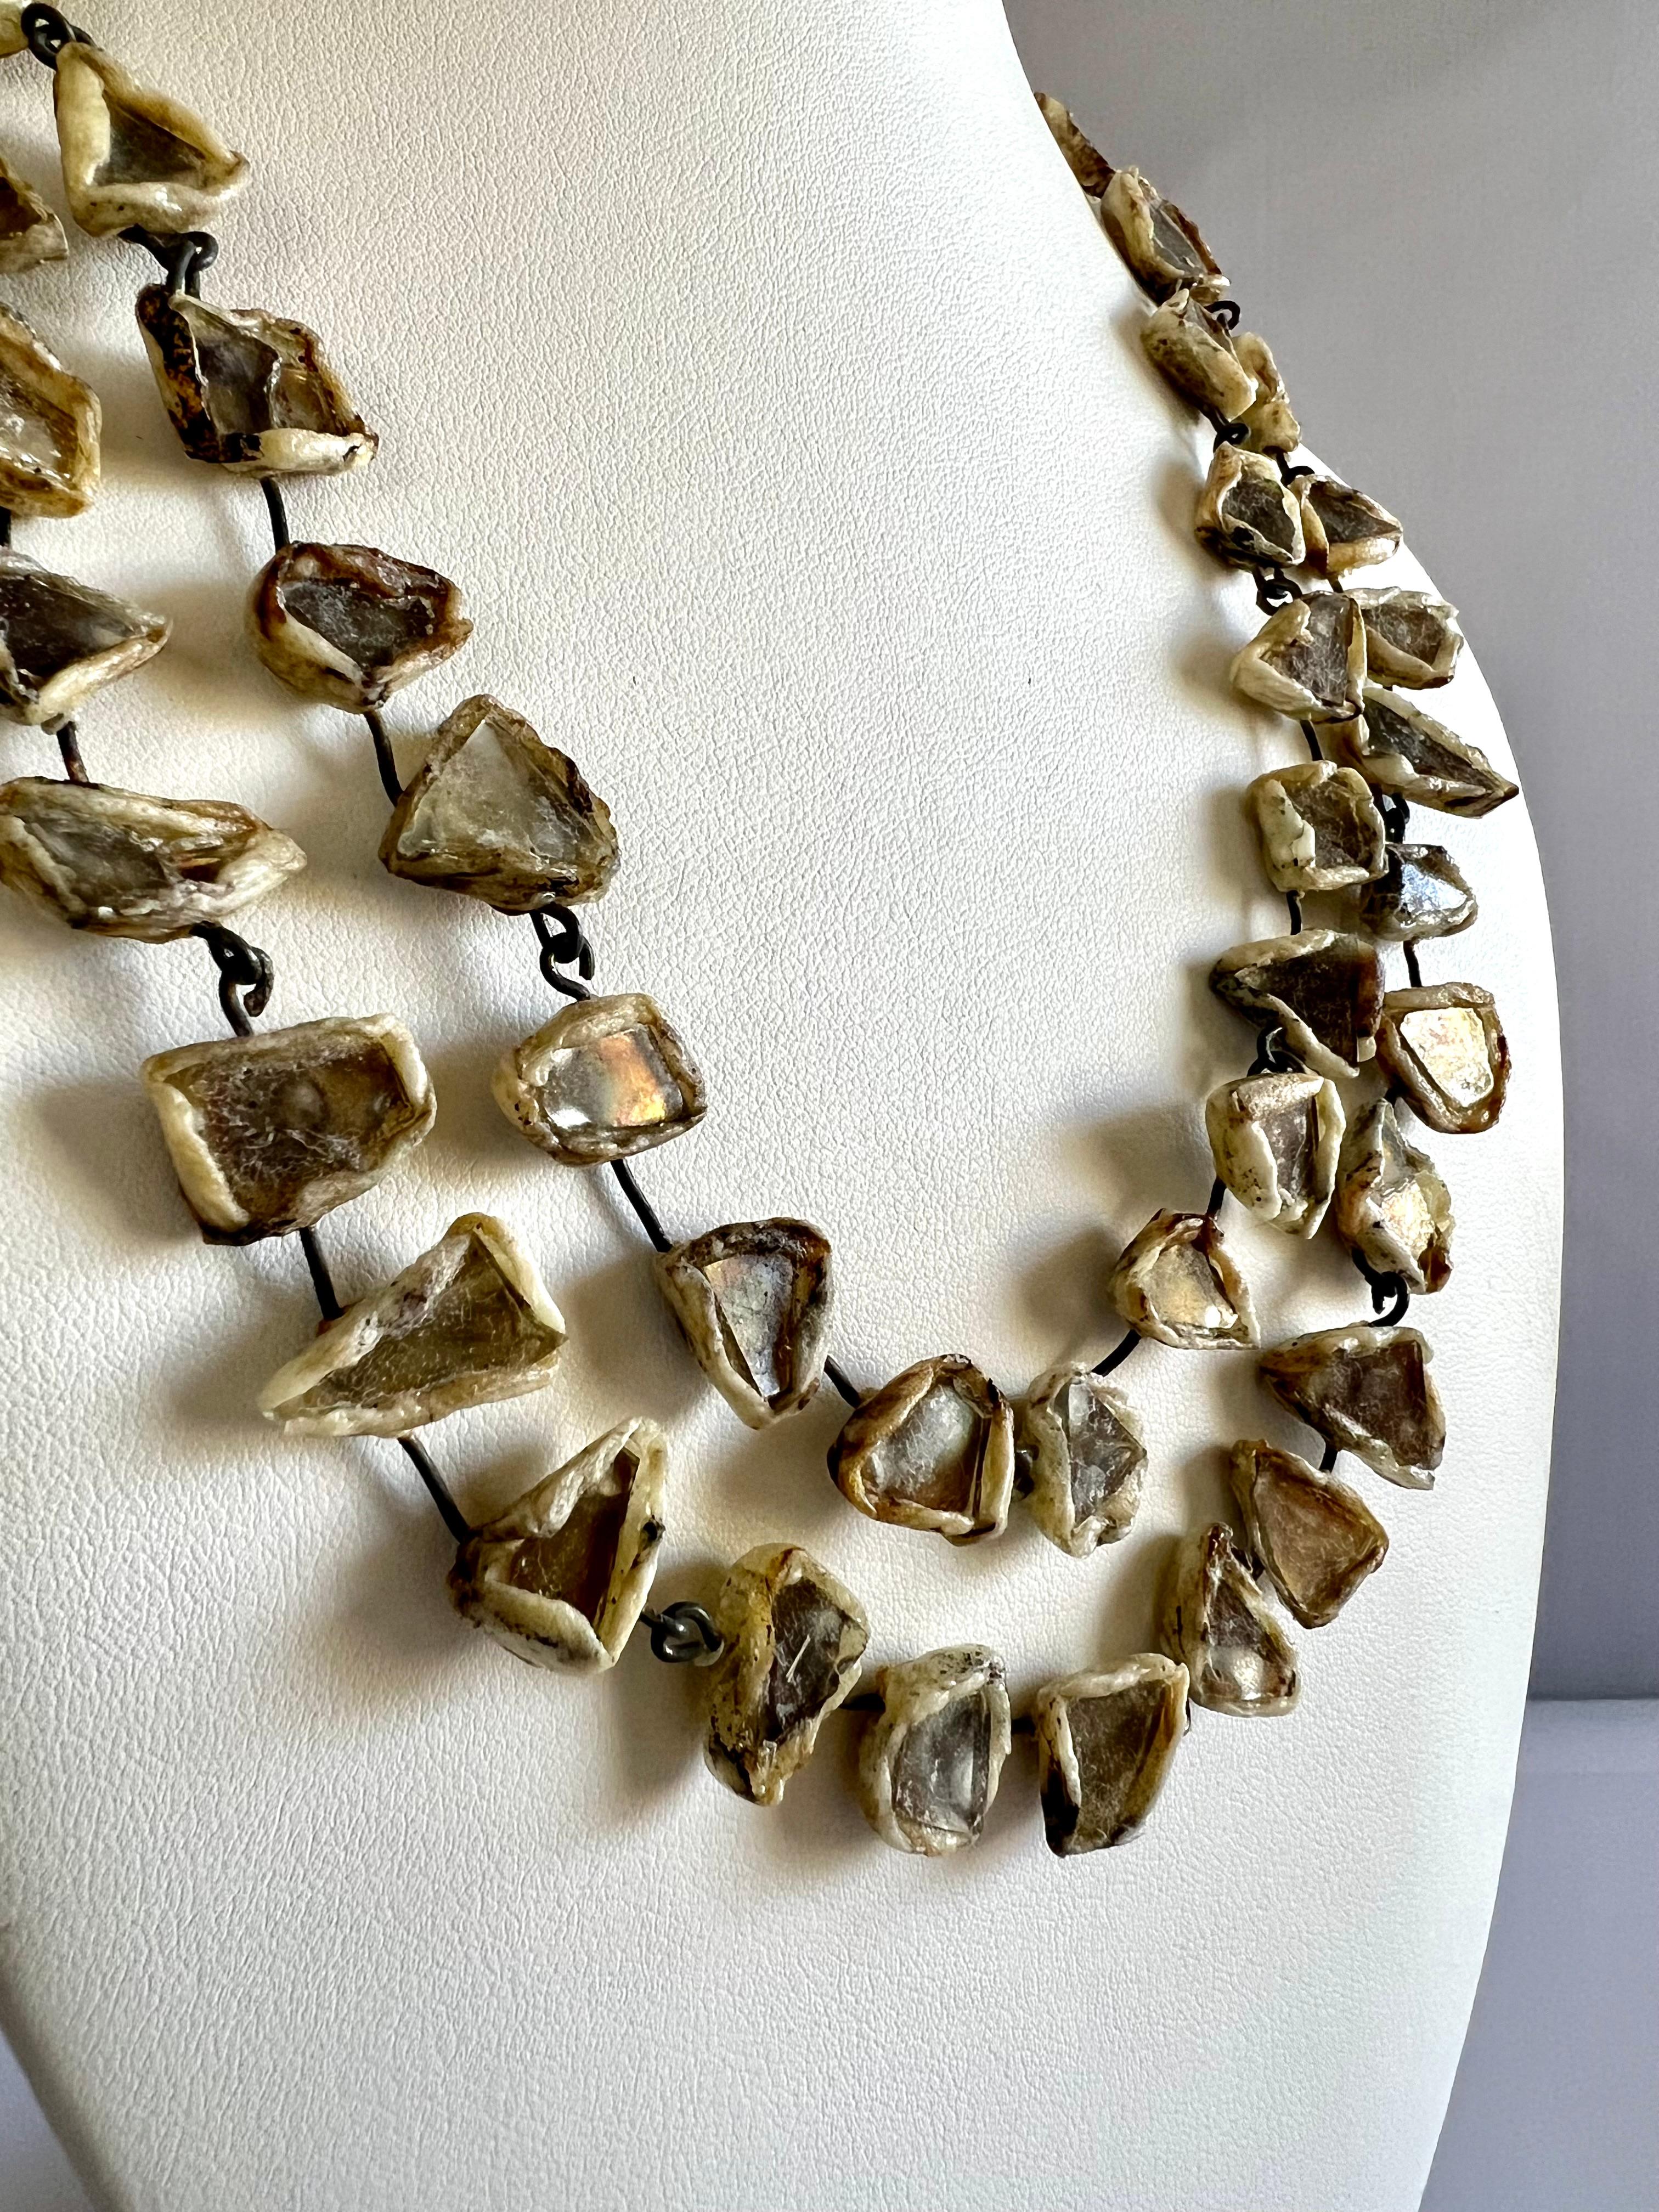 Spektakuläre Halskette aus zarten, goldbronzenen, verspiegelten Fragmenten, die in cremefarbene Talousel